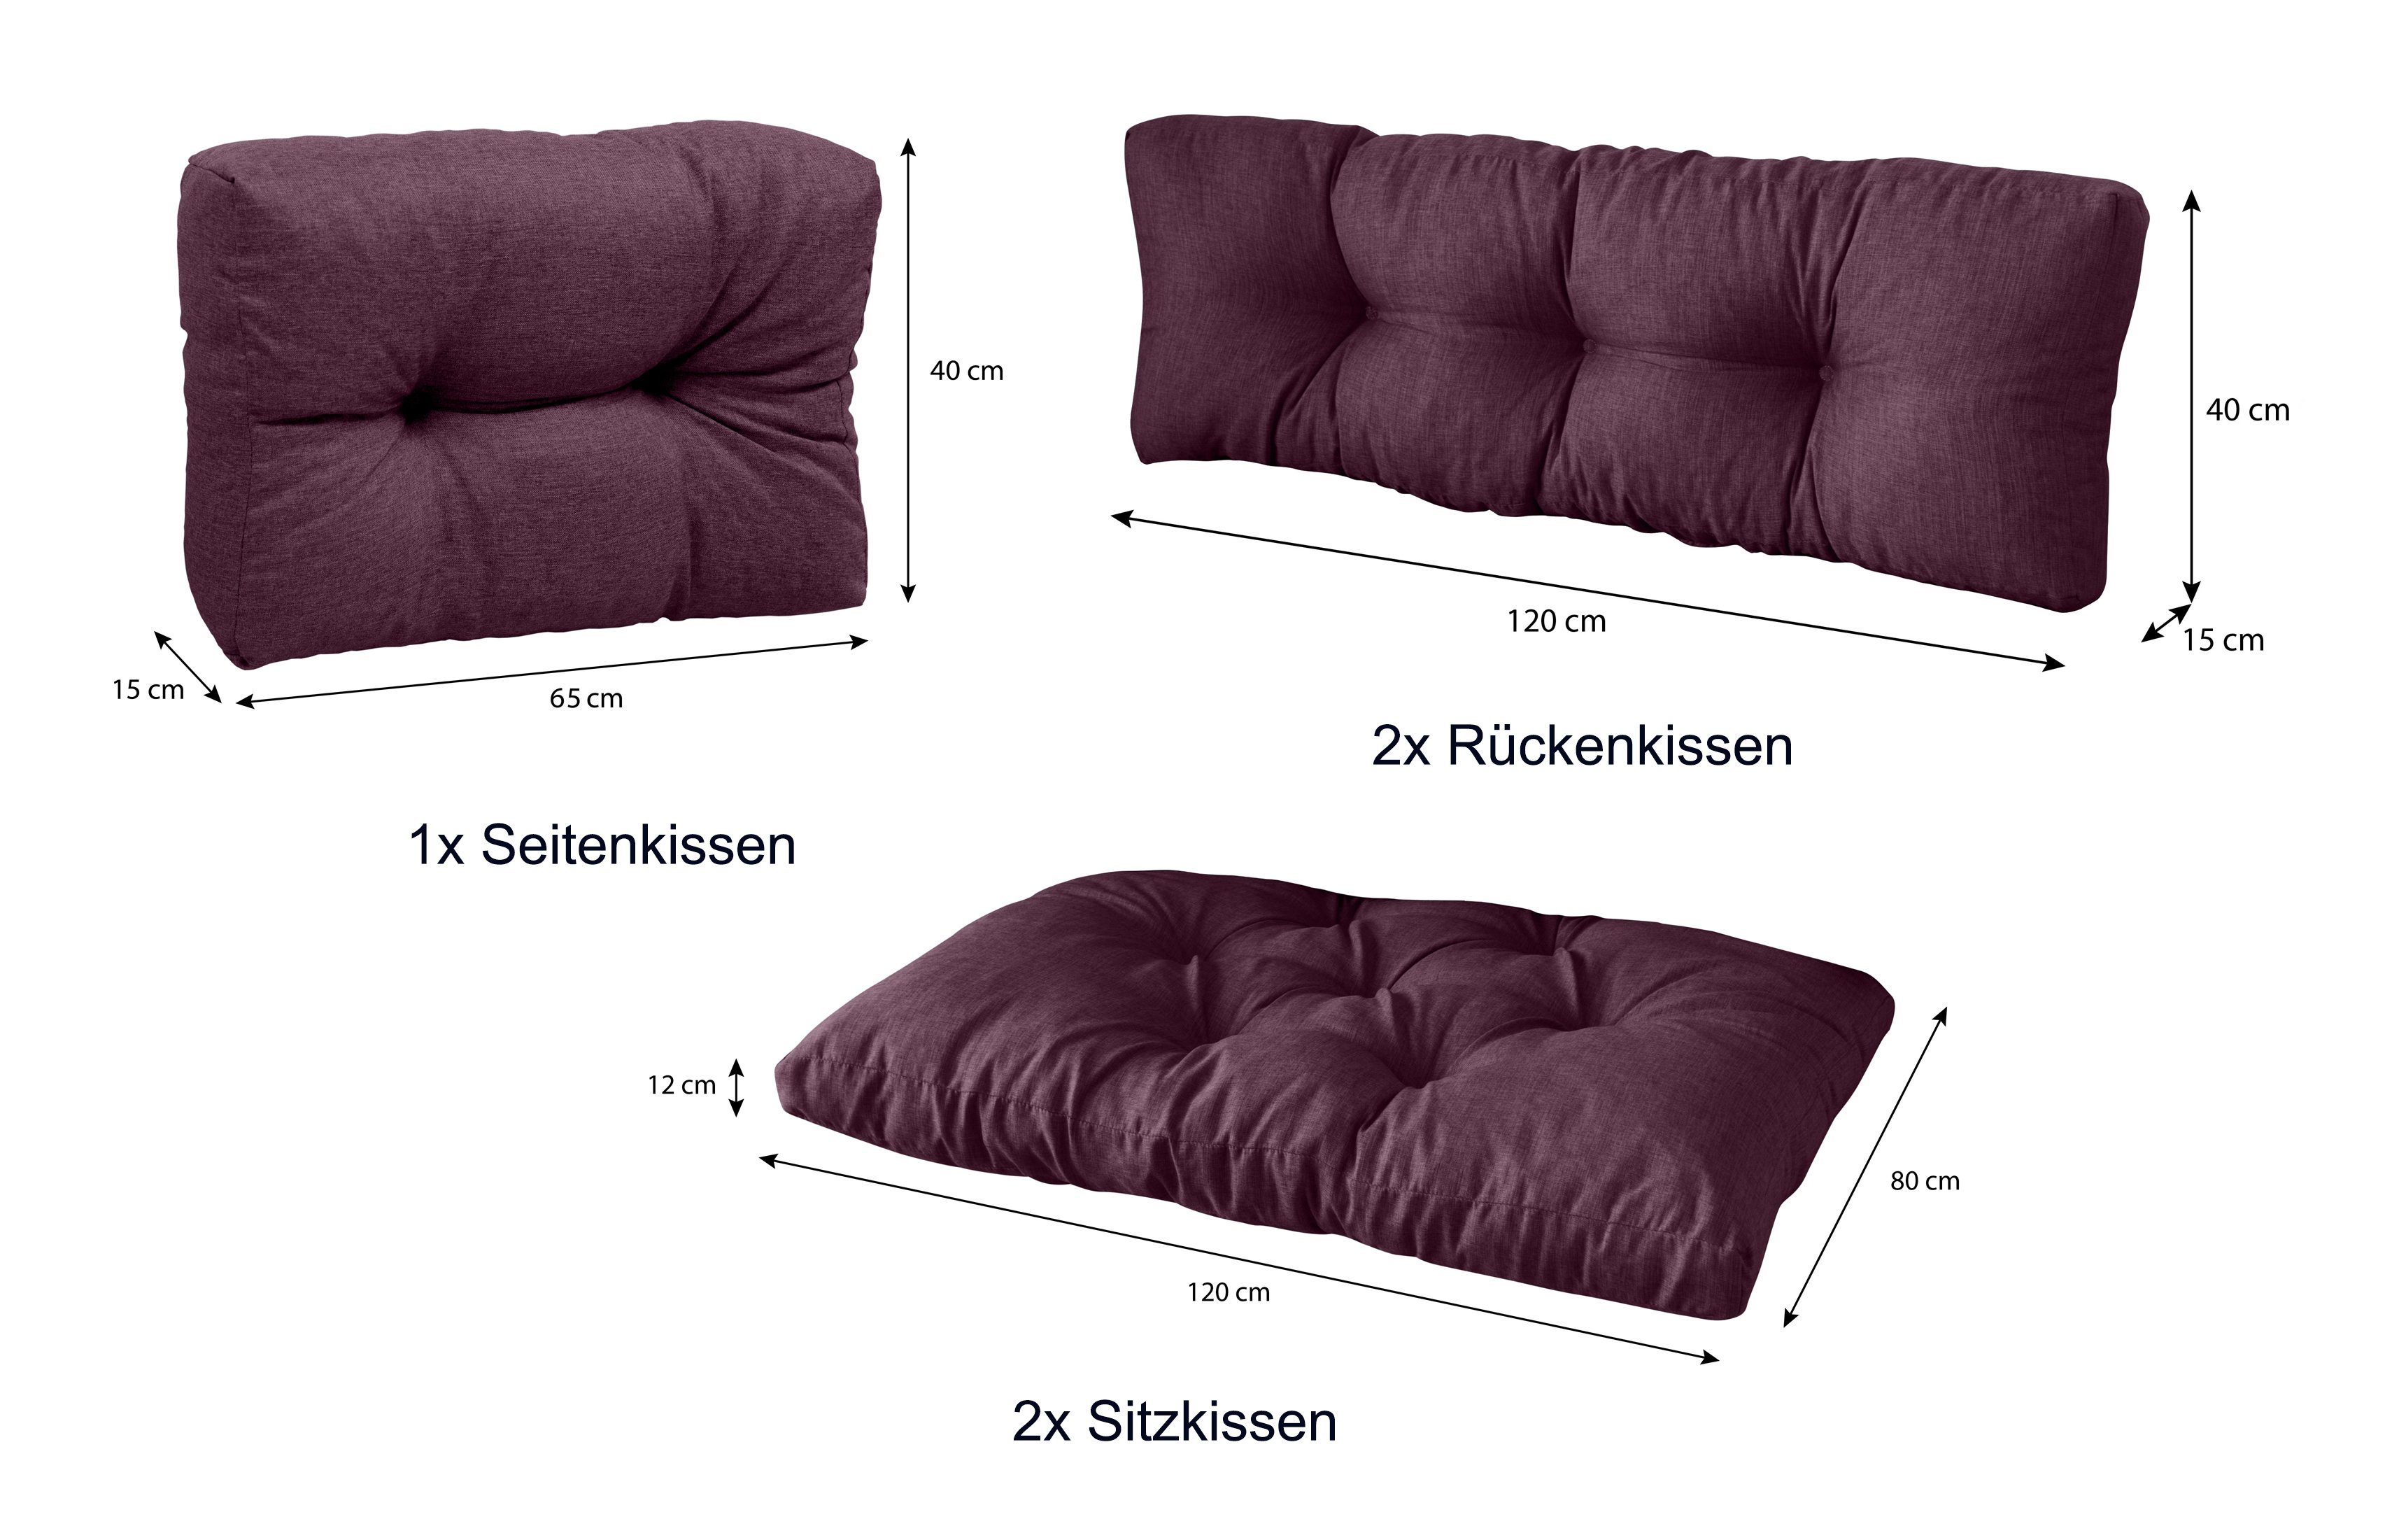 Rückenkissen Palettenkissen 2x 120 1x palettenmöbel 5er + sunnypillow + Violett palettencouch Seitenkissen, polsterauflage 2x Sitzkissen x 80 Set: